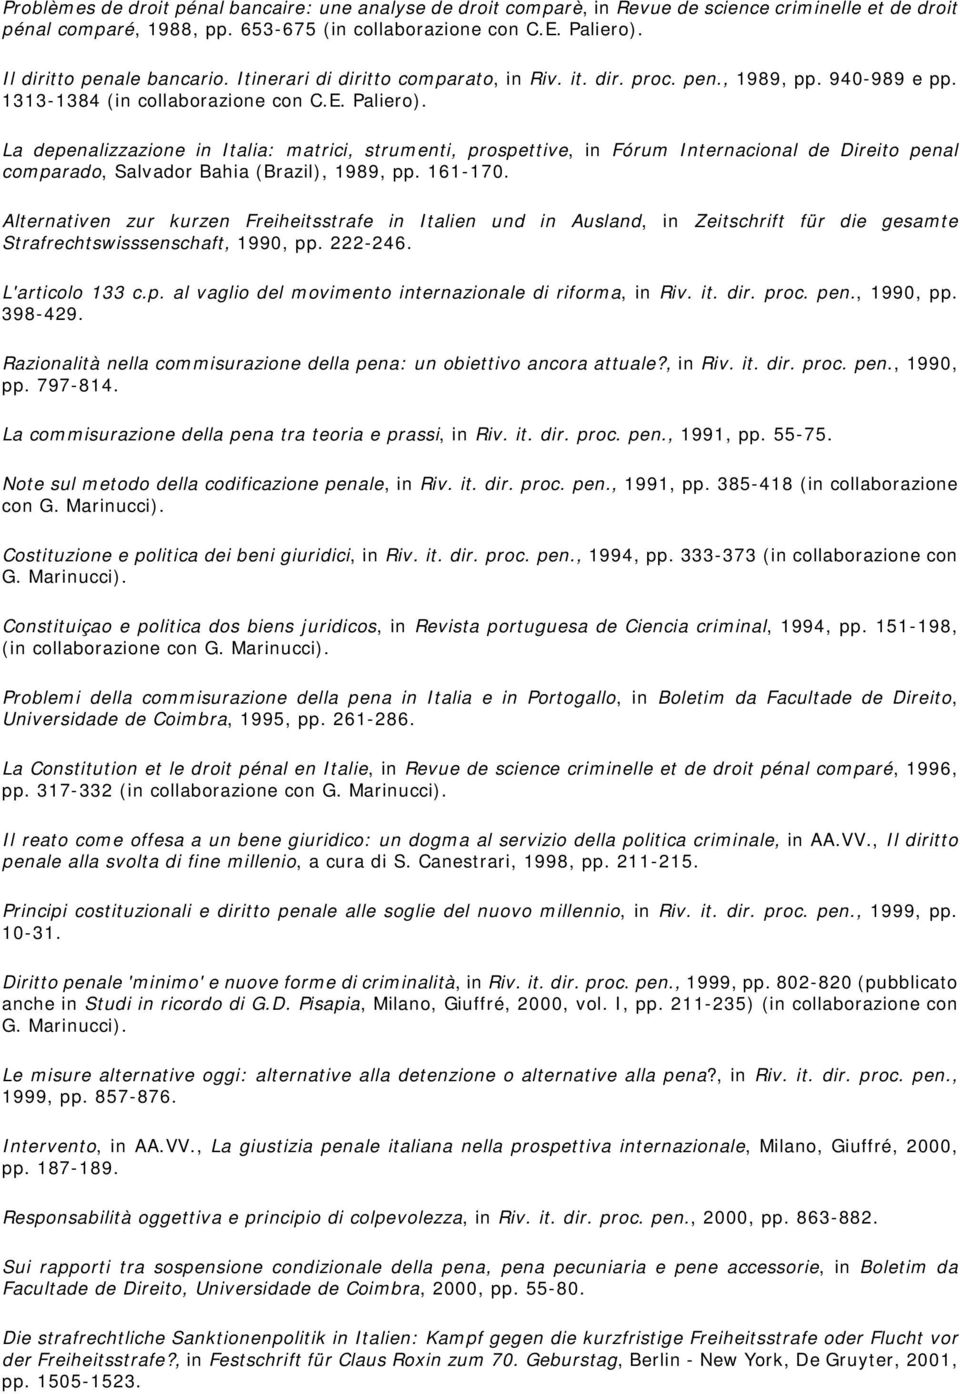 La depenalizzazione in Italia: matrici, strumenti, prospettive, in Fórum Internacional de Direito penal comparado, Salvador Bahia (Brazil), 1989, pp. 161-170.